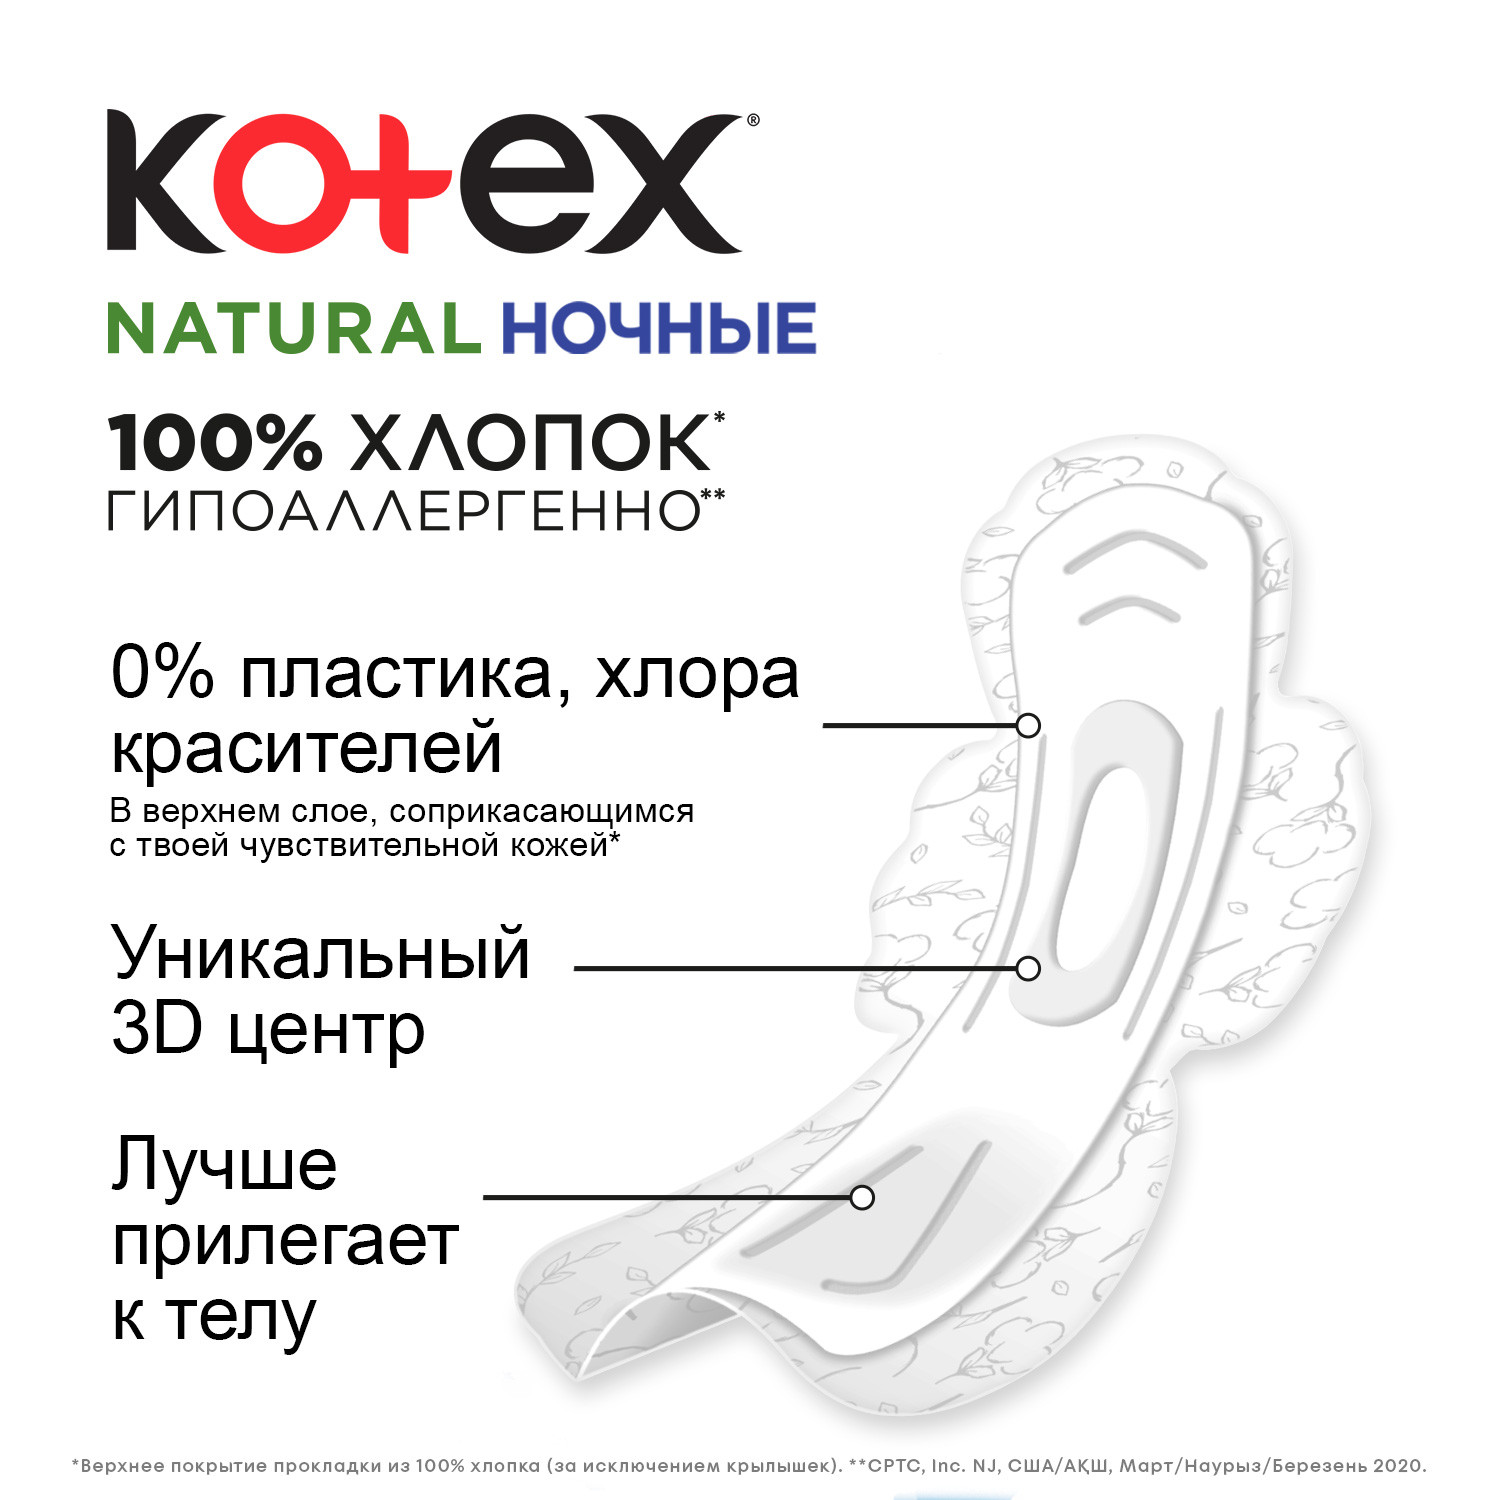 Прокладки KOTEX Natural ночные 6шт - фото 6